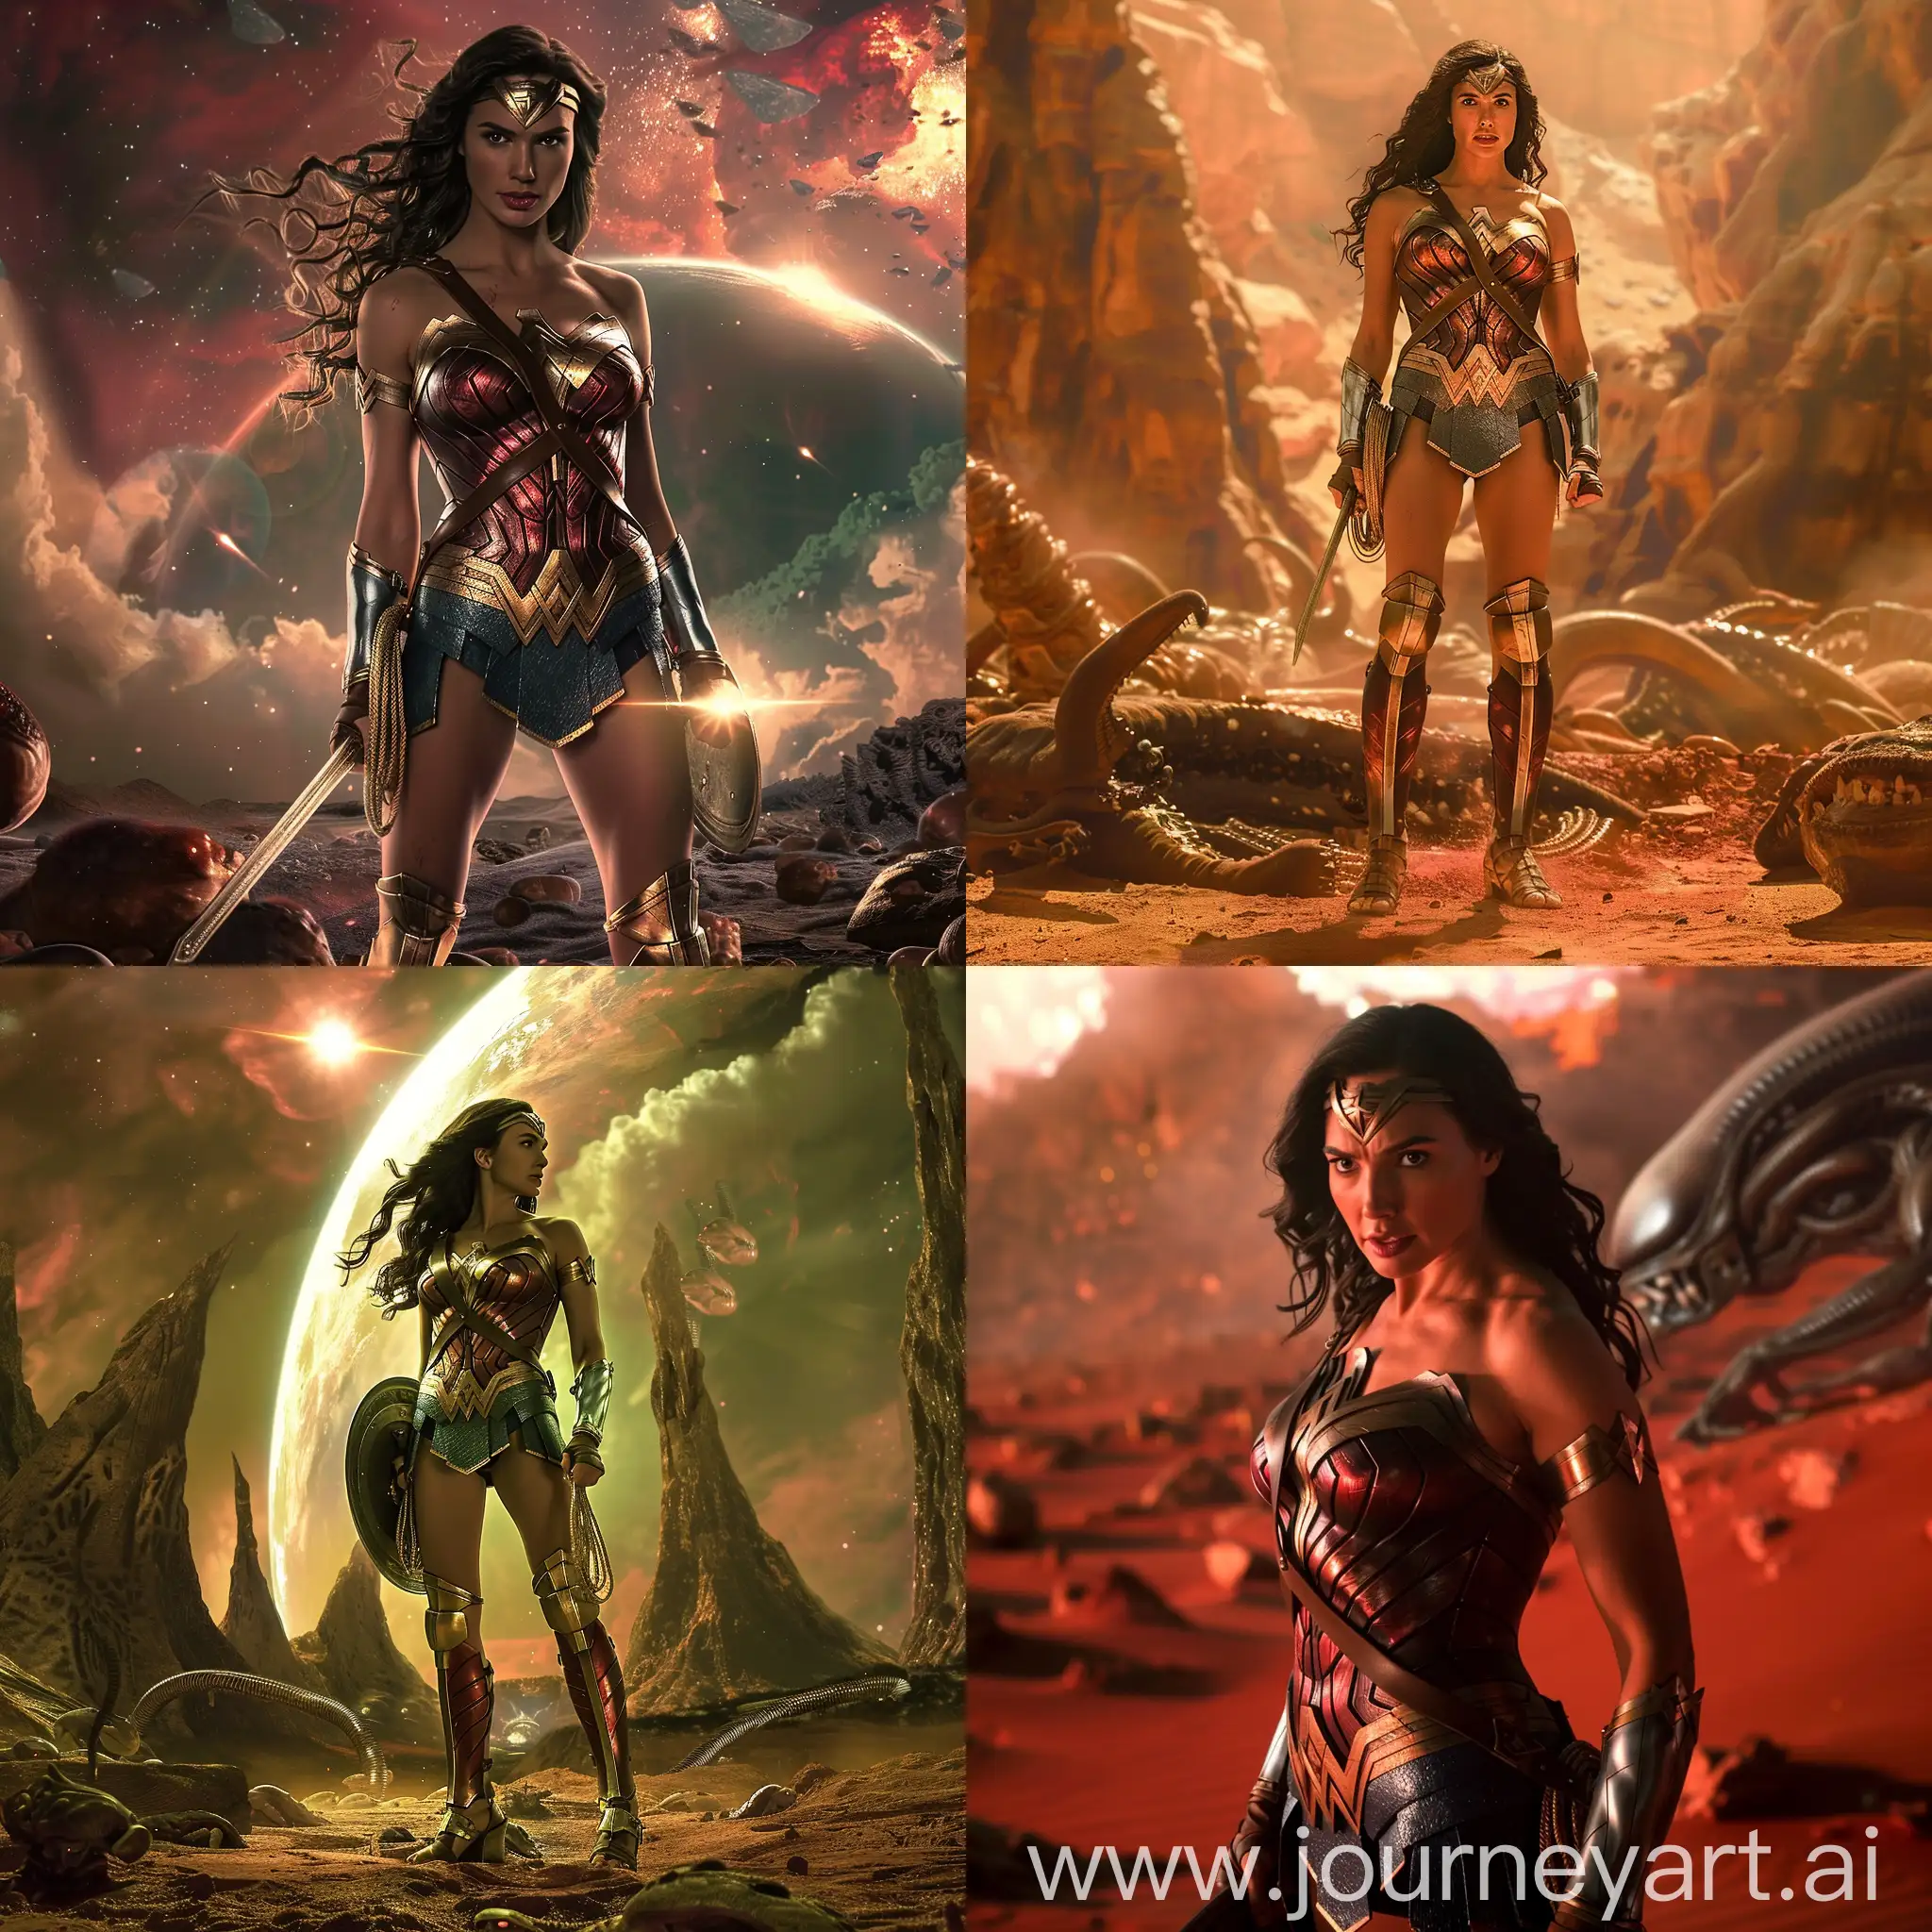 Wonder-Woman-Gal-Gadot-Stands-Majestic-in-Alien-World